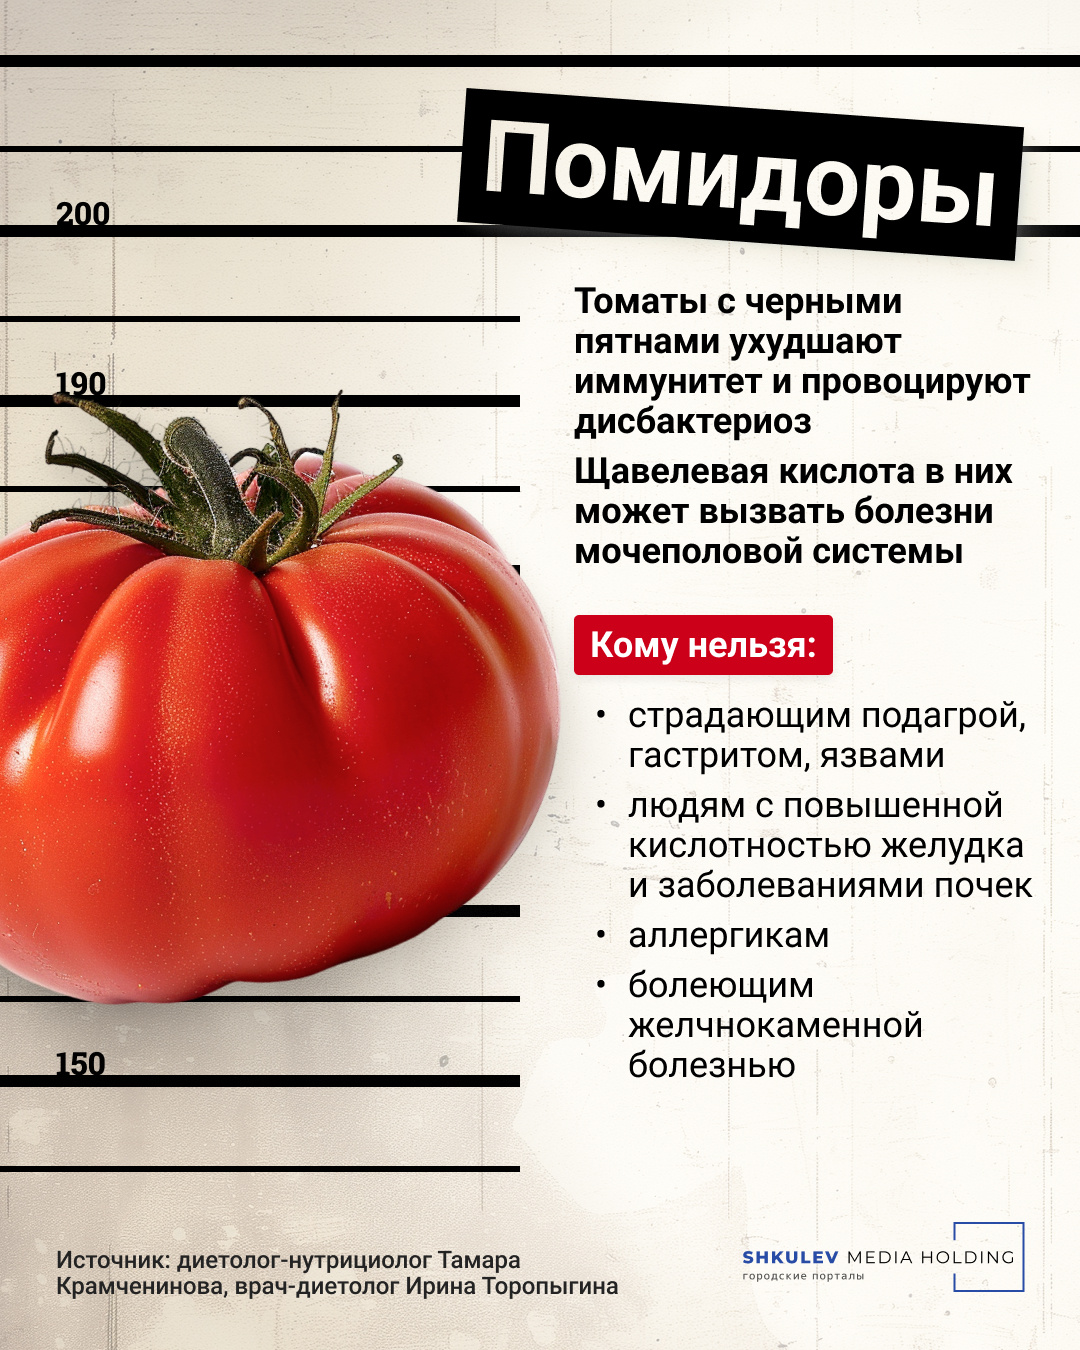 Яркий красный цвет помидора явно не понравился полицейскому-аллергику